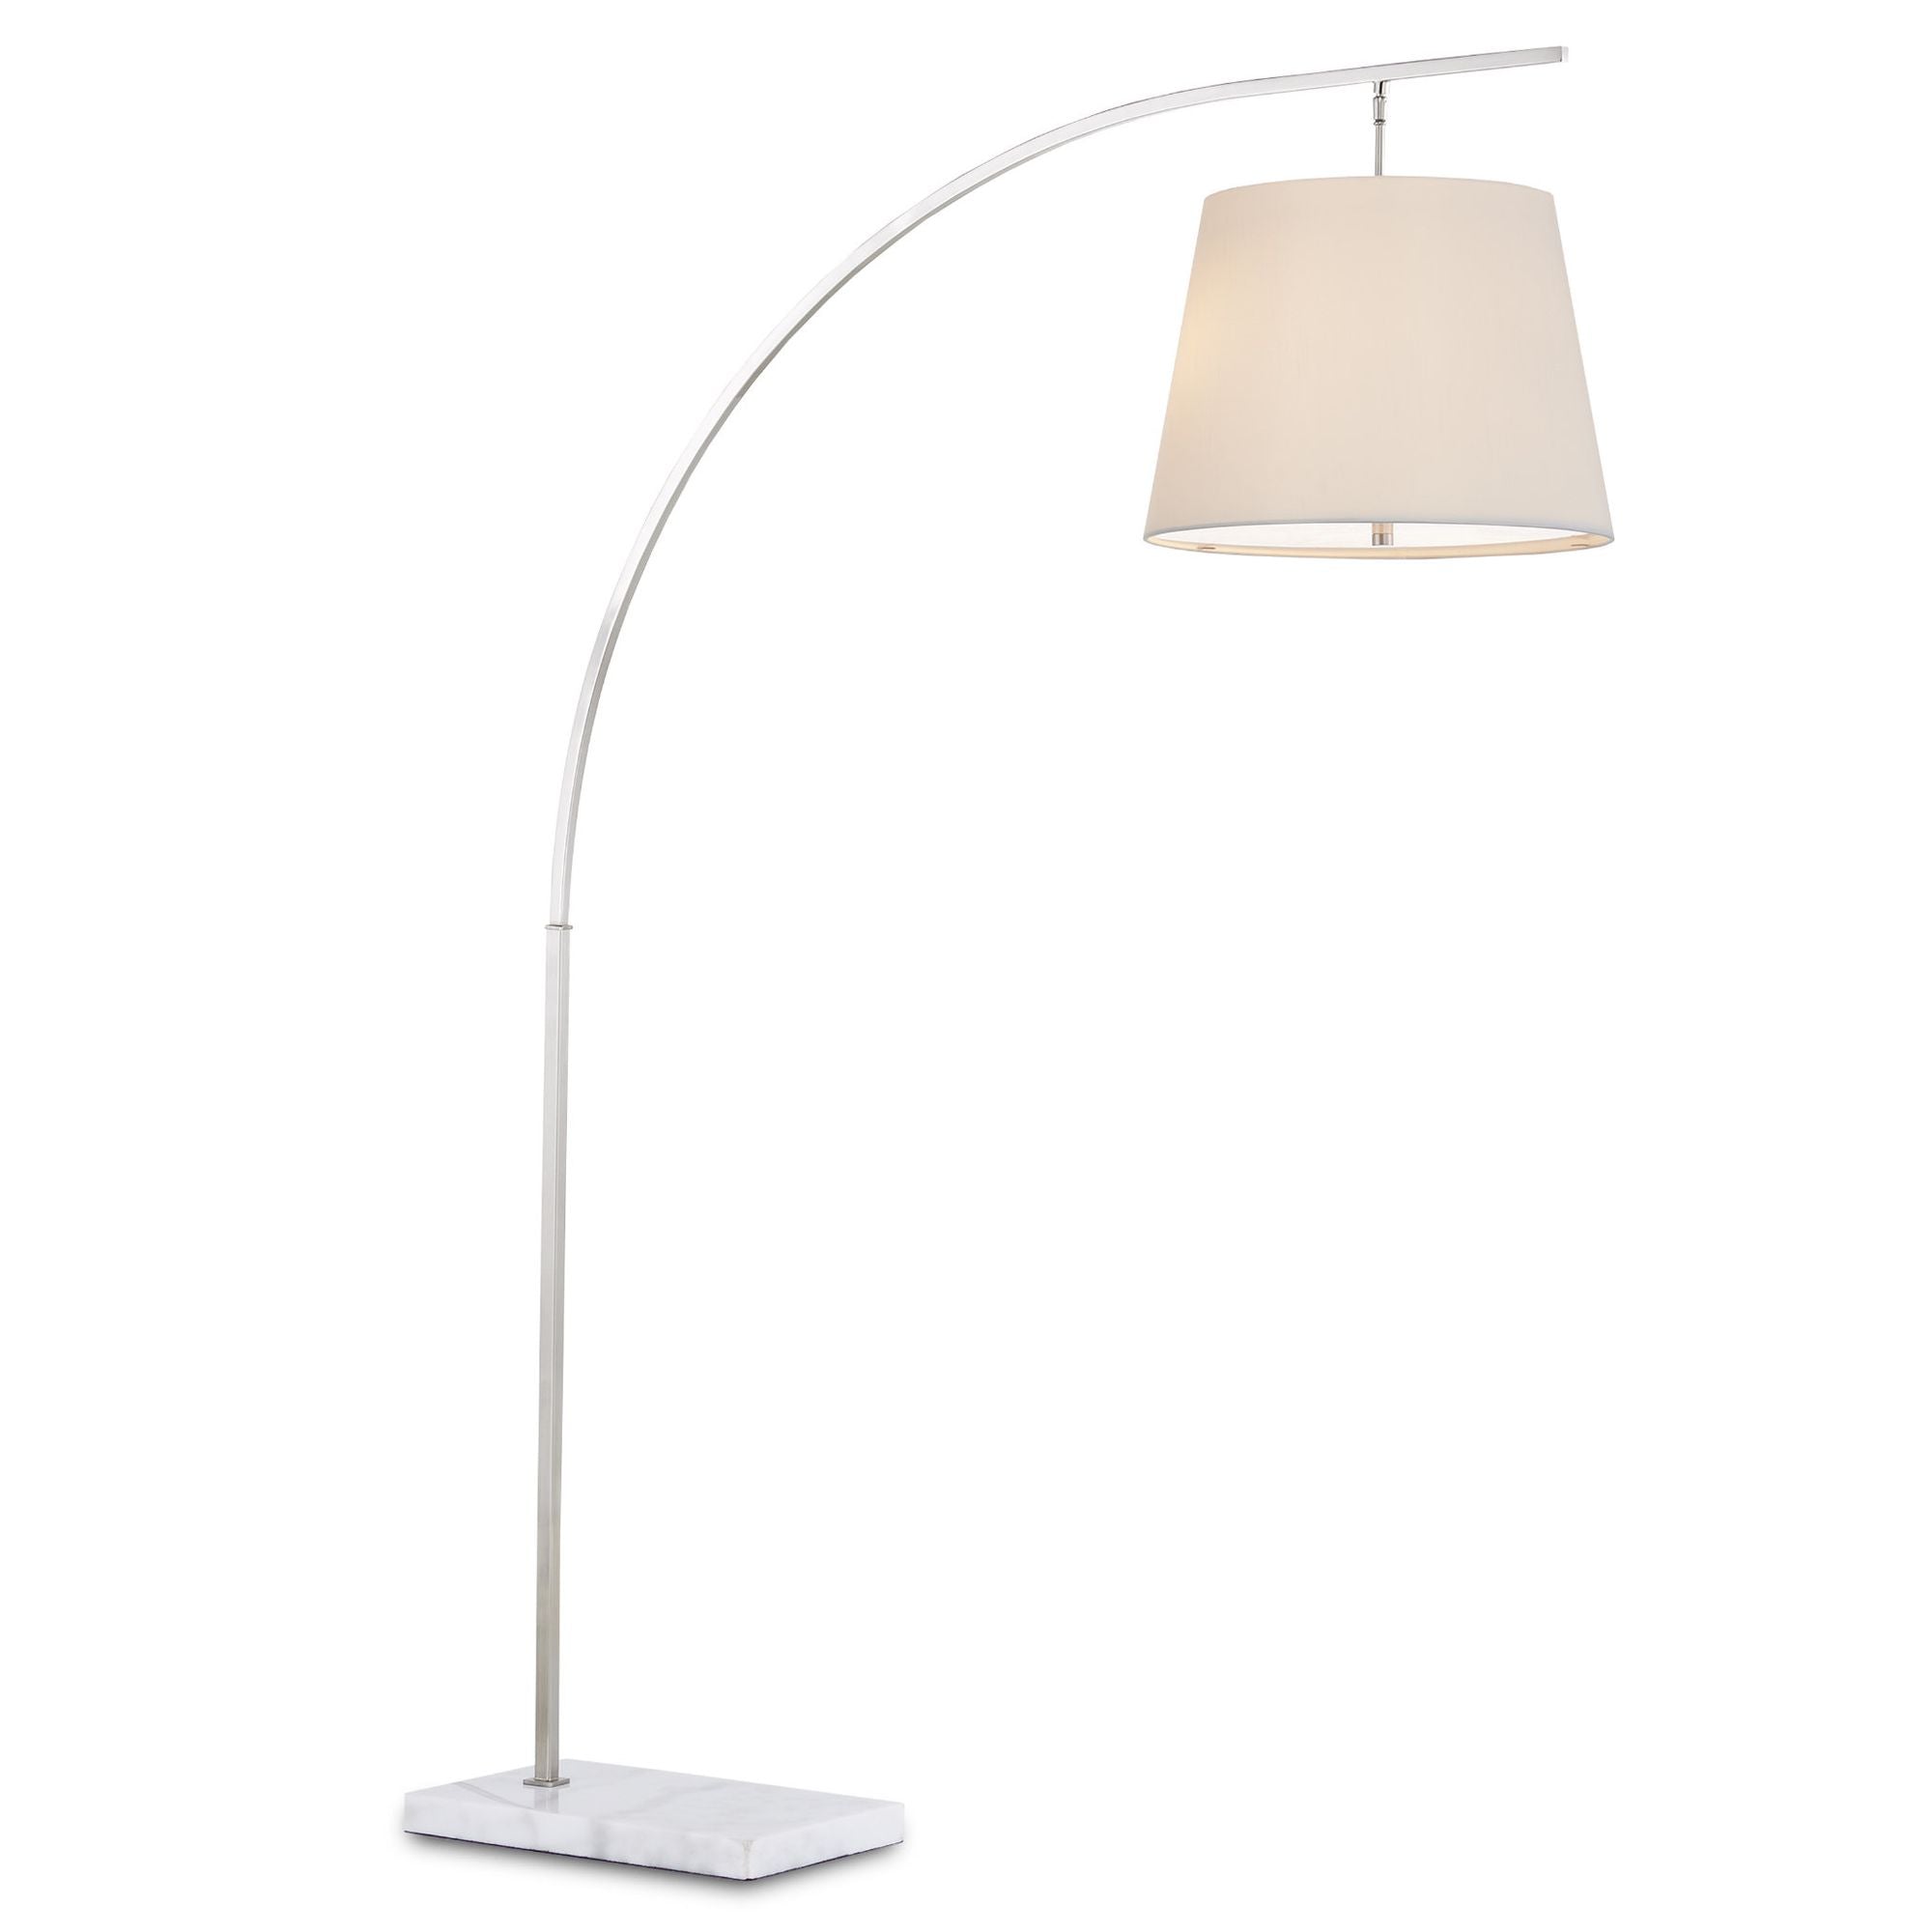 Cloister Medium Nickel Floor Lamp - Brushed Nickel/White